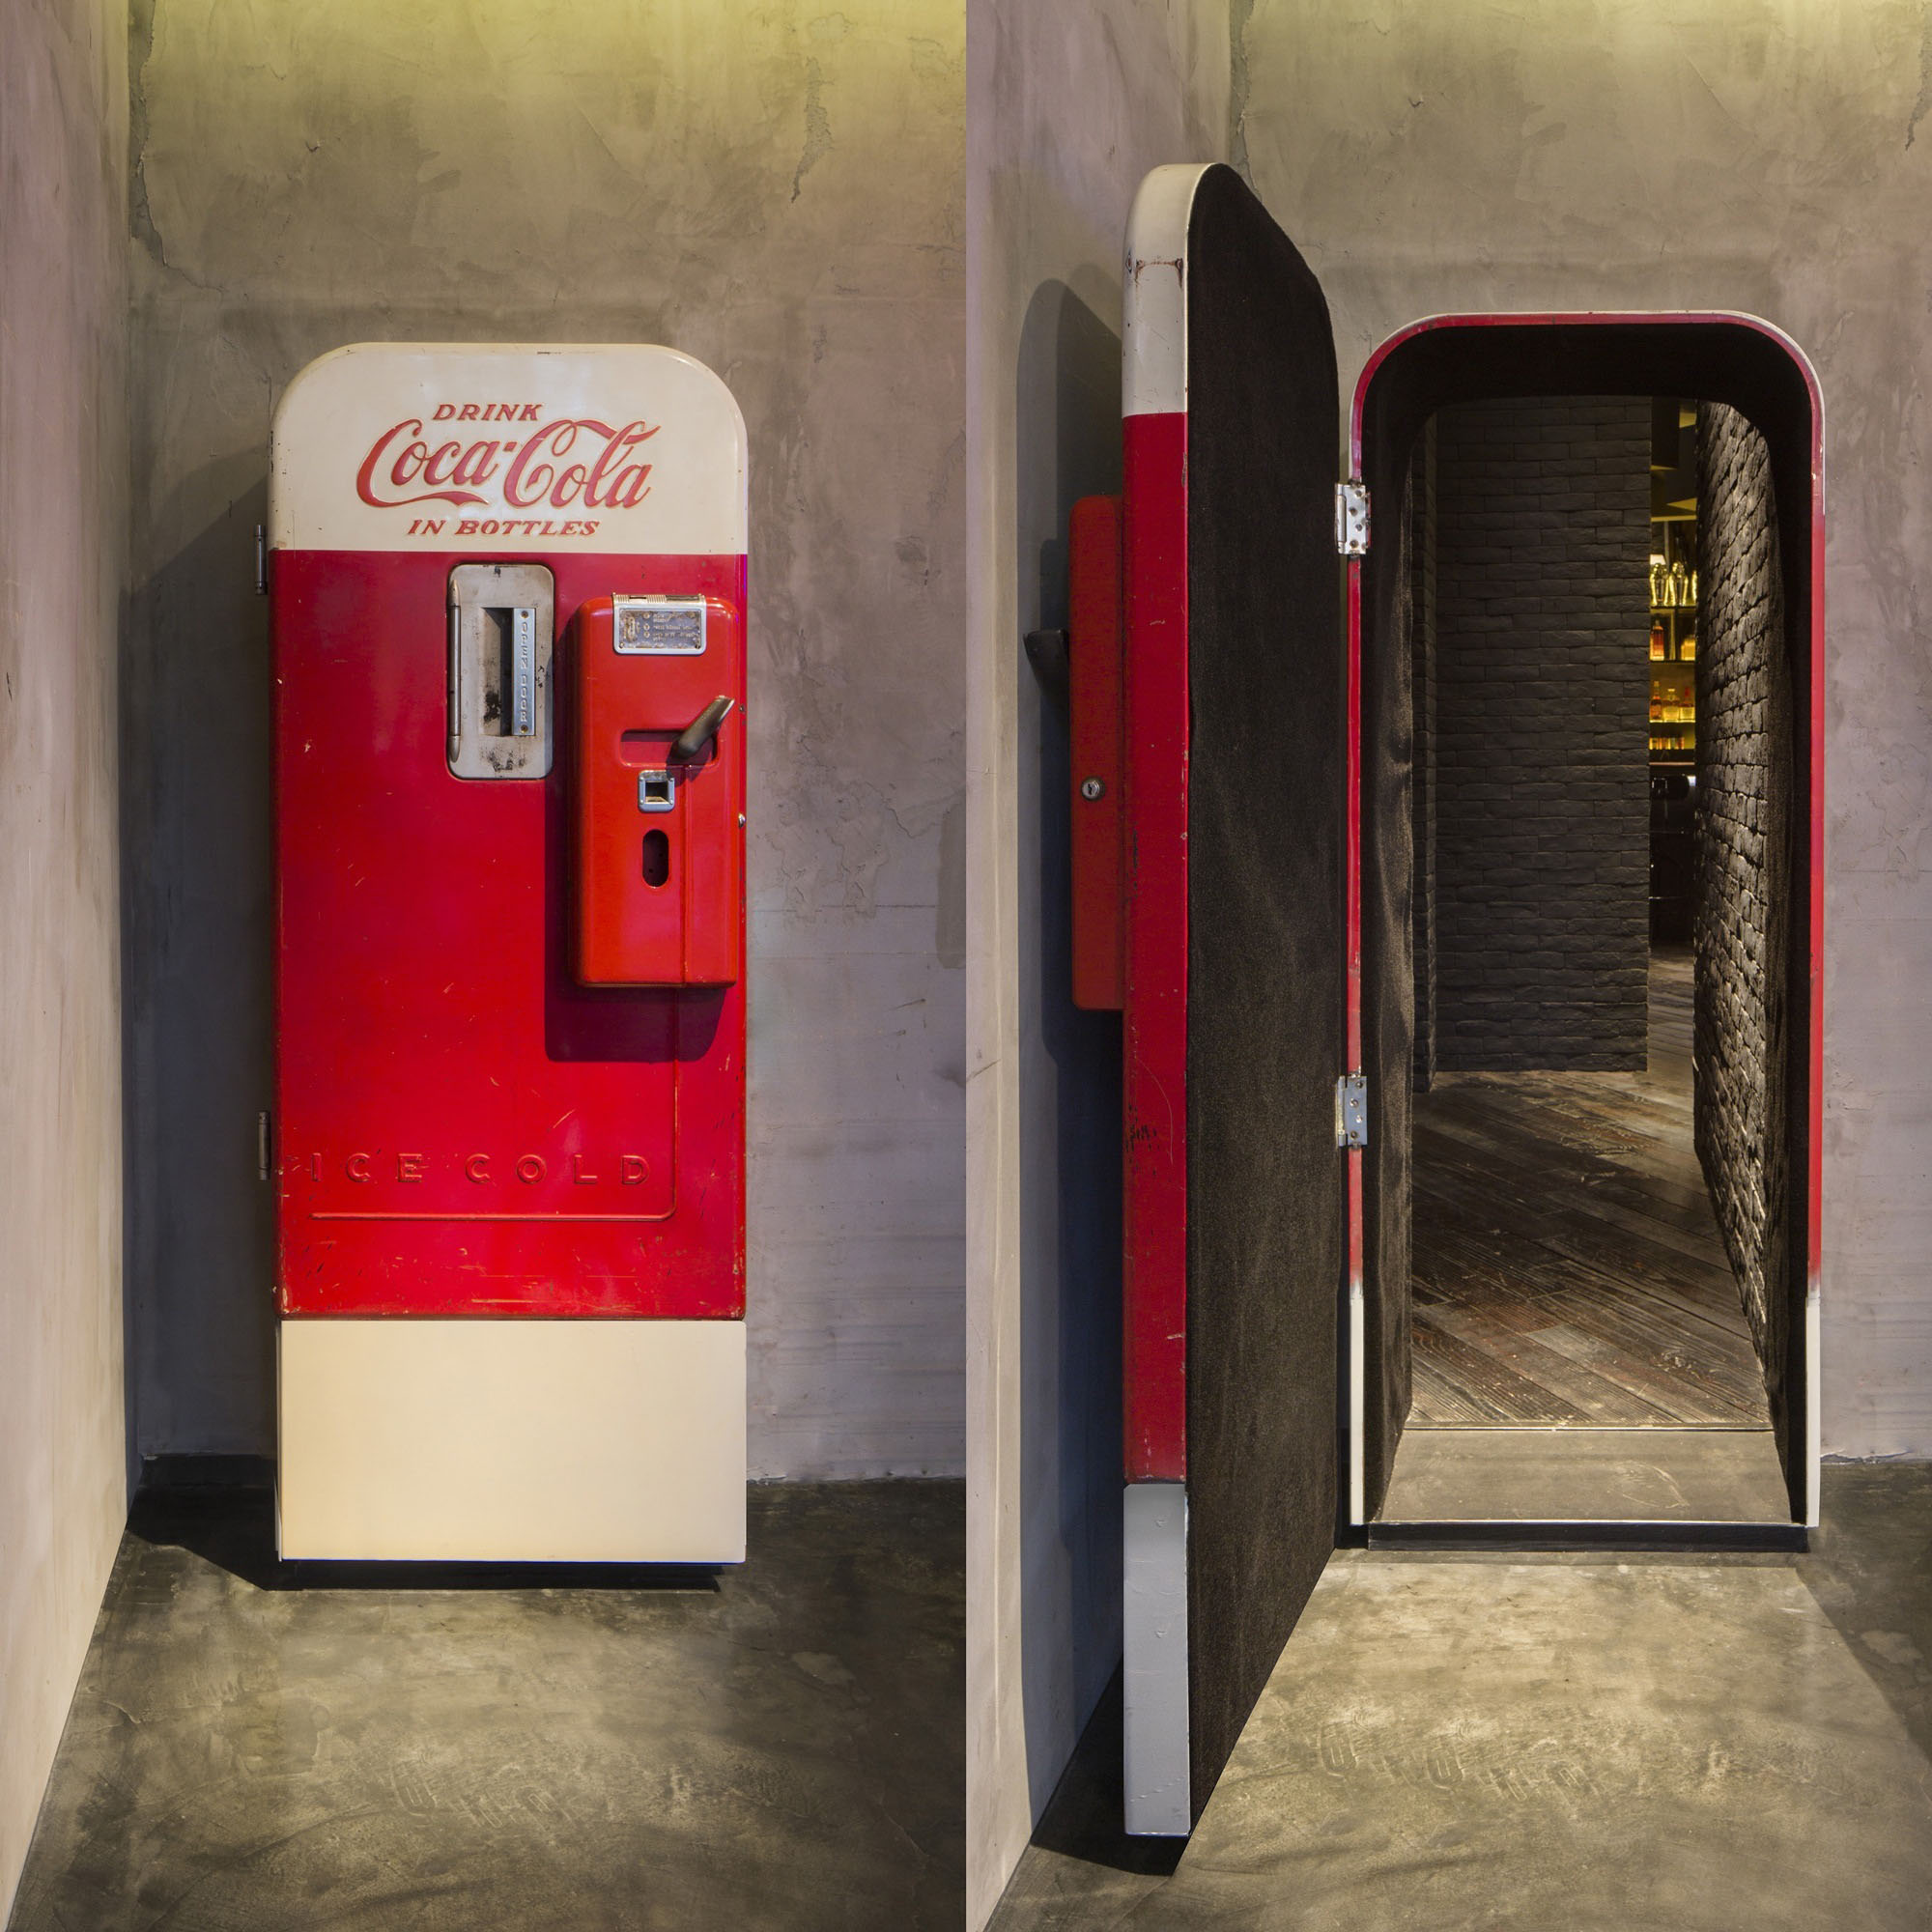 Unique Speakeasy-Themed Bar Entrance with Camouflage Coca-Cola Door